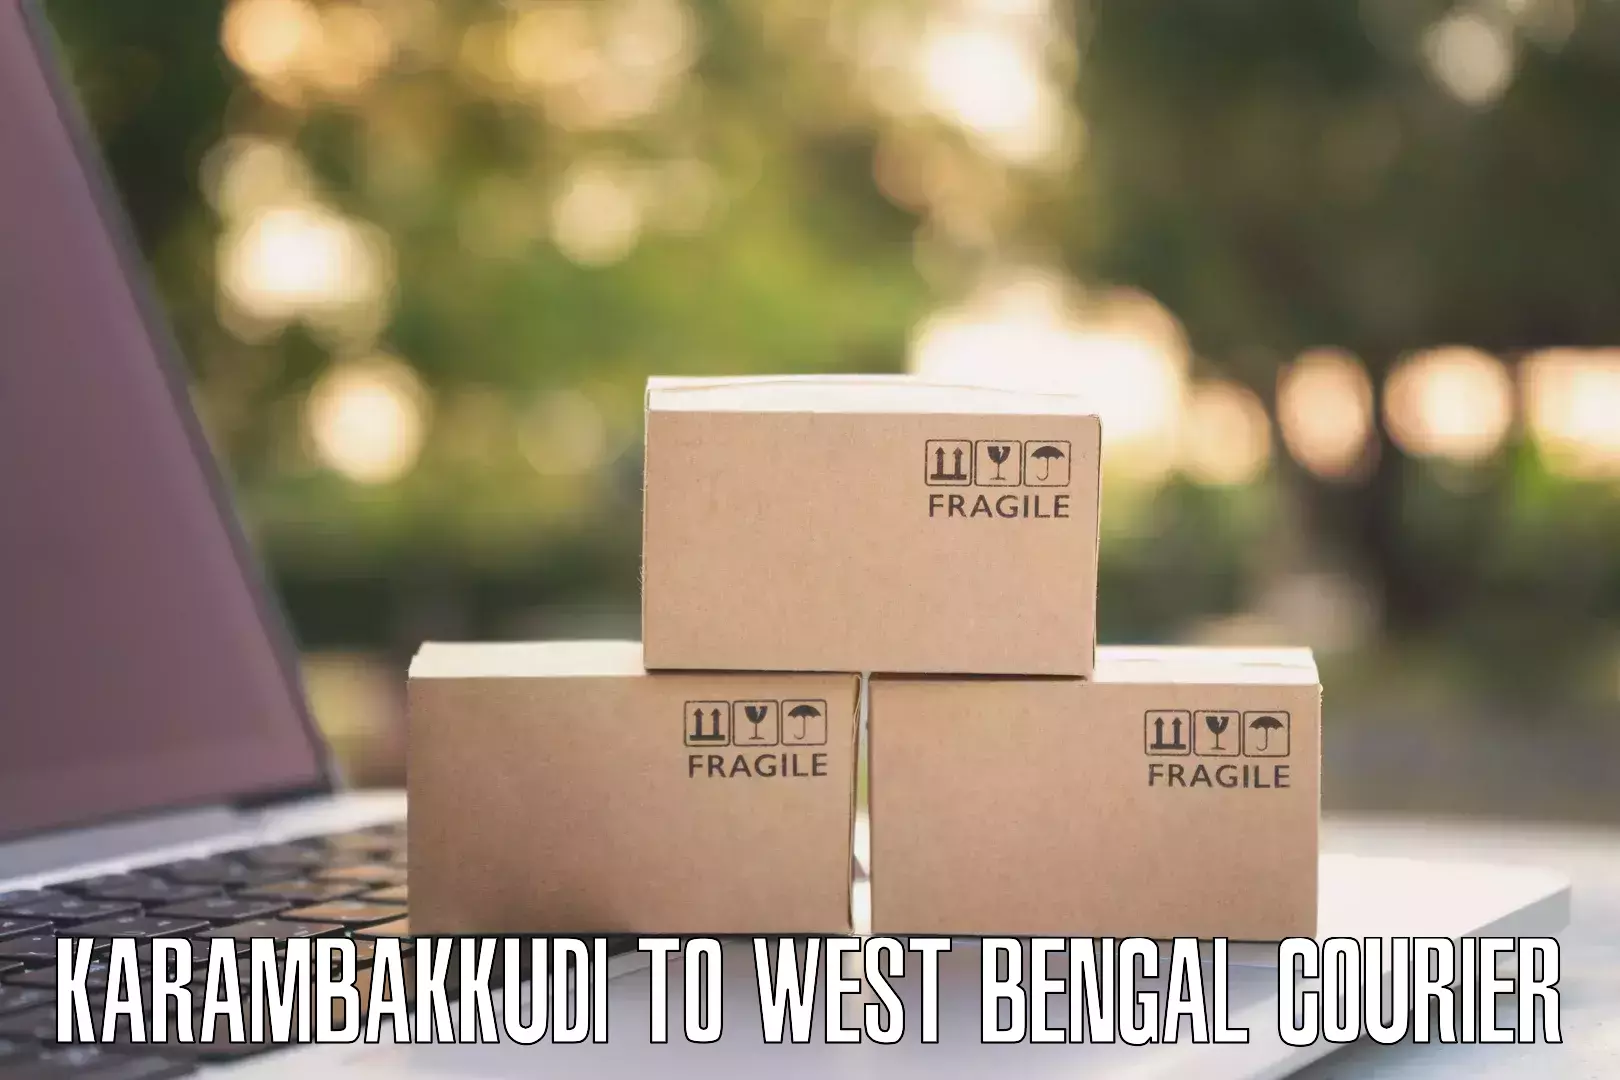 Online courier booking Karambakkudi to Kolkata Port